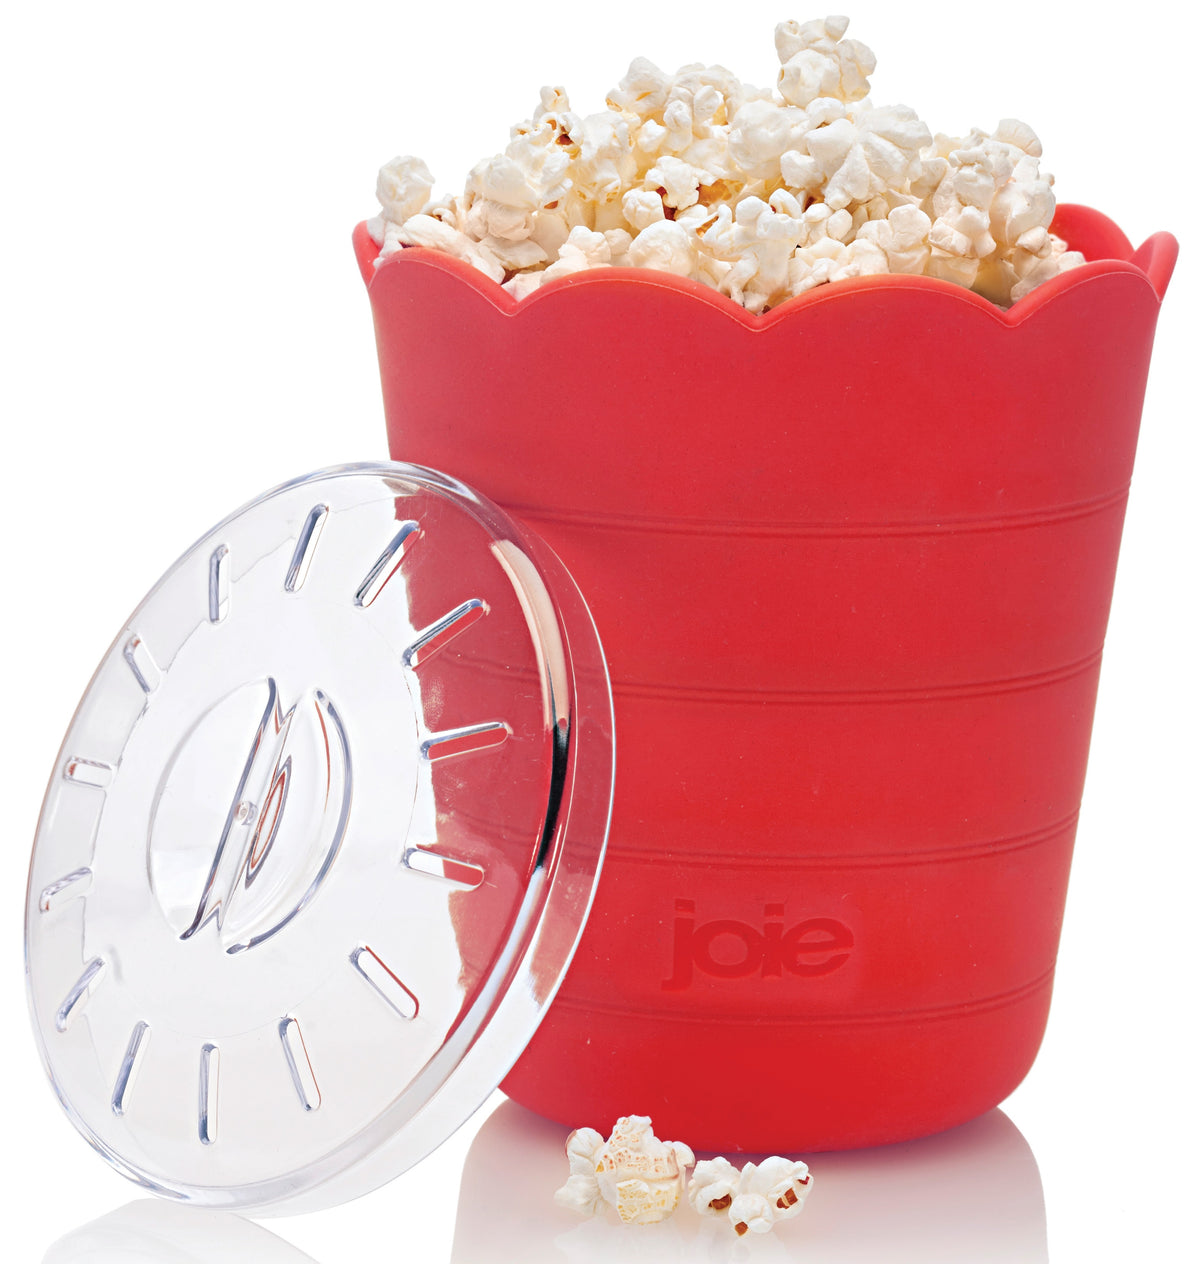 Joie MSC 14449 Pop Up Mircoware Popcorn Maker, Clear/Red